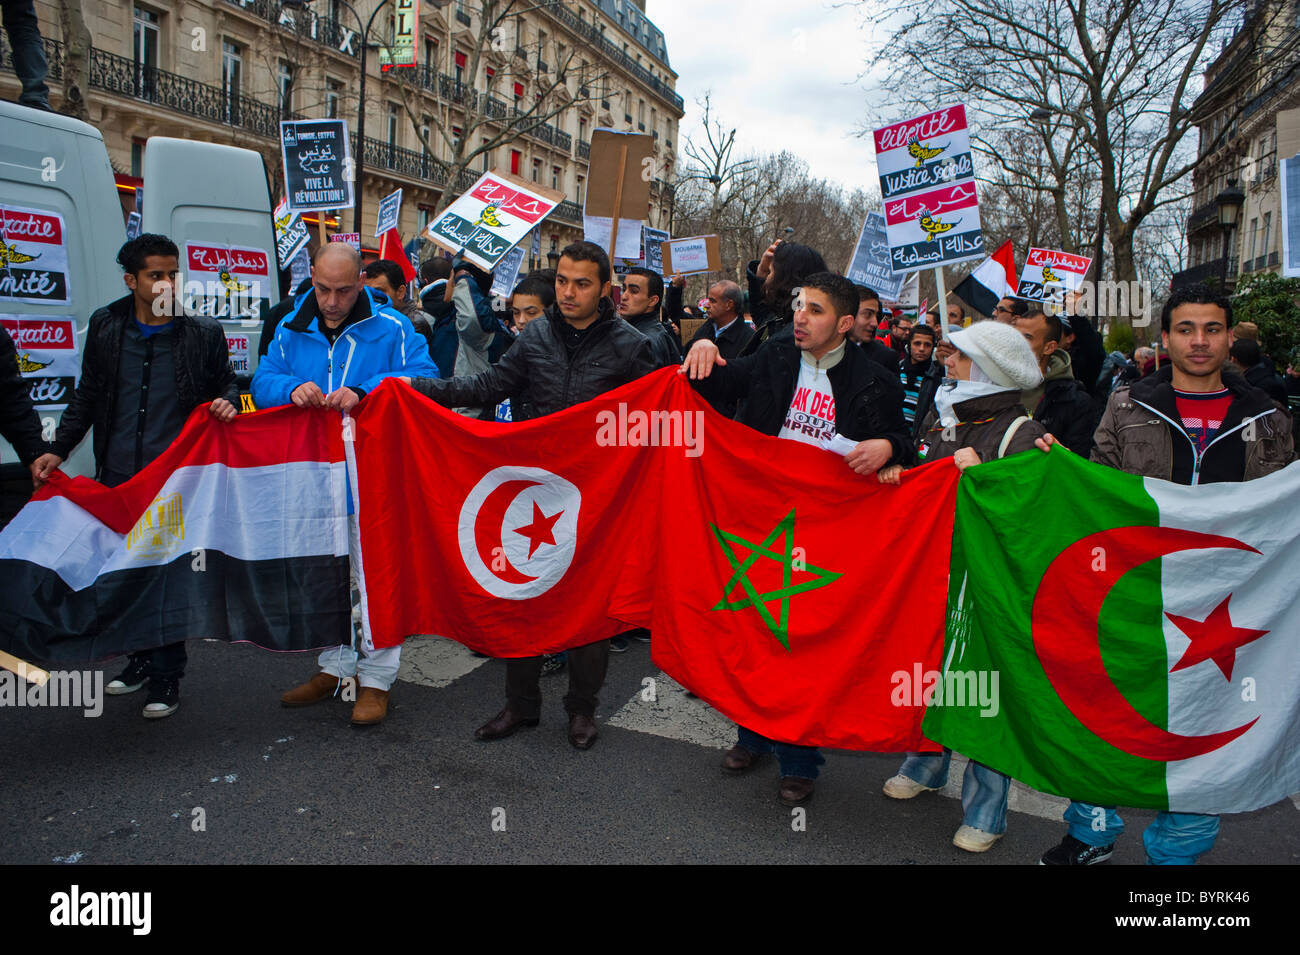 Paris, la France, l'Egypte et d'autres pays arabes drapeaux manifestants protestent contre Hosni Moubarak, à l'extérieur, rue 'printemps arabe' tenant des panneaux de protestation, drapeaux nationaux internationaux, immigrants africains marchant dans la rue Banque D'Images